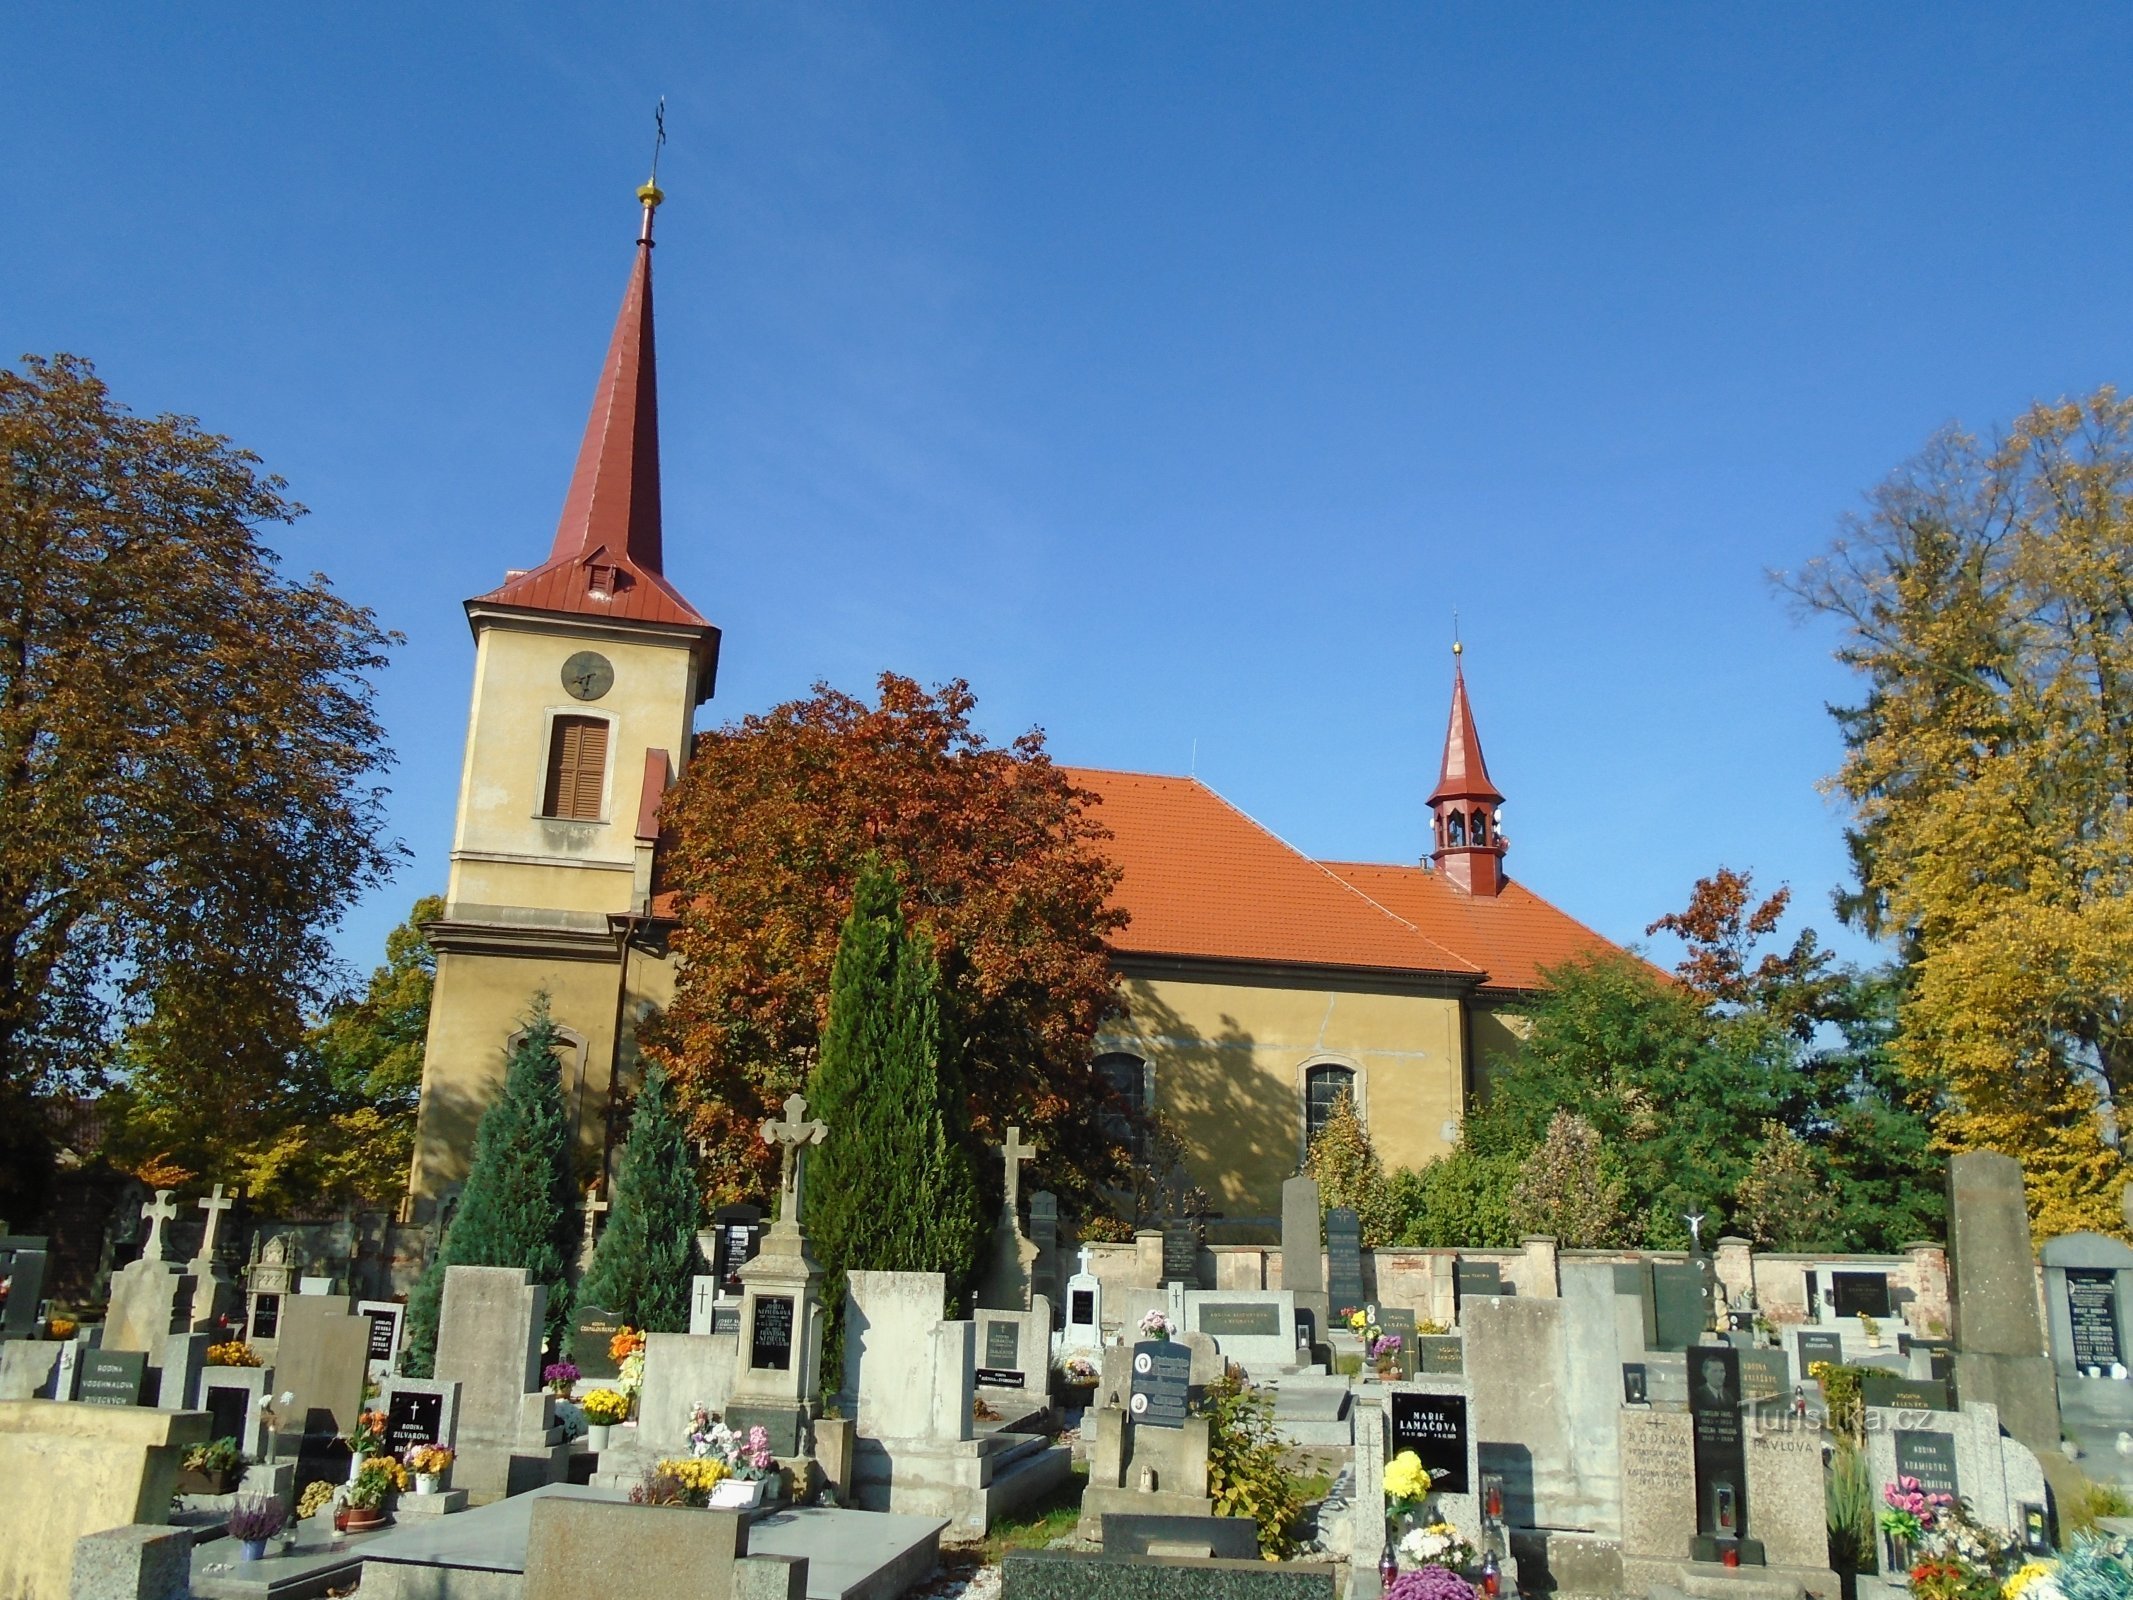 Crkva Nalaska sv. Stjepan (Černilov)